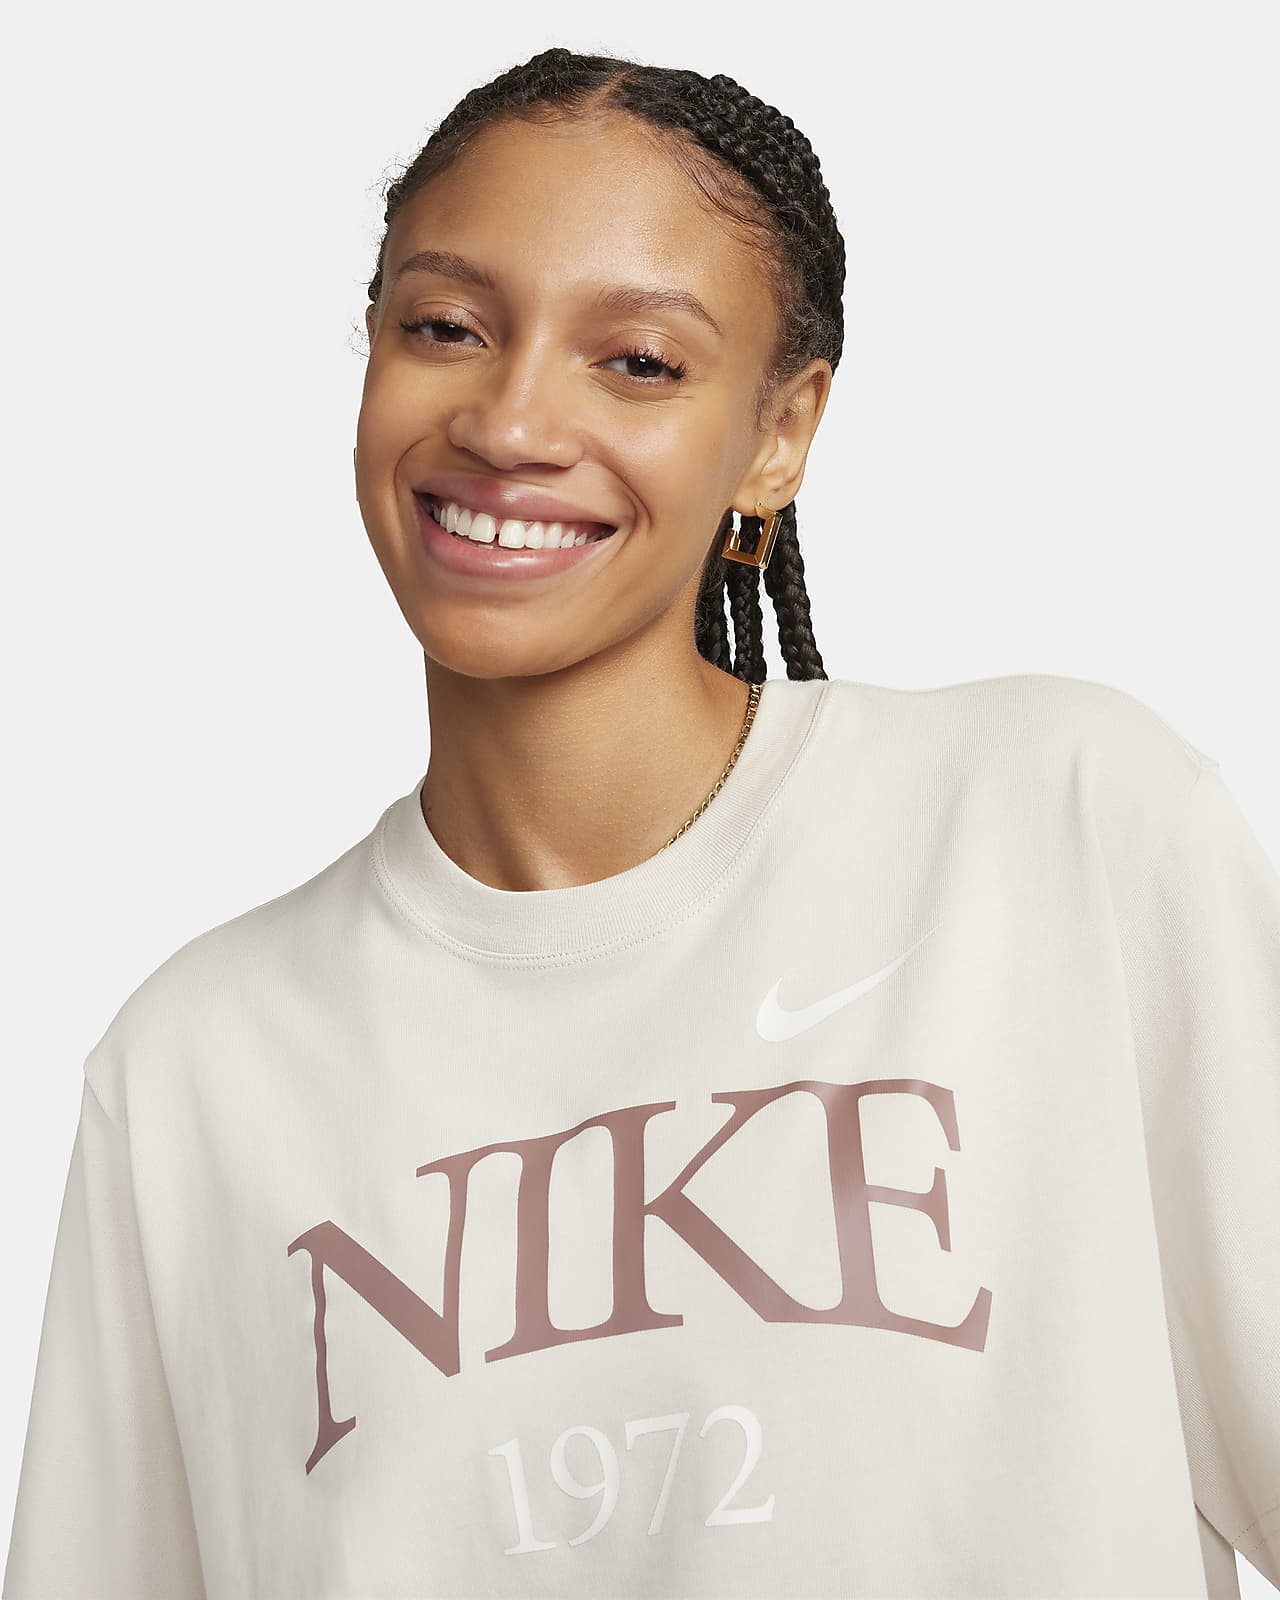 Nike Classic Women\'s T-Shirt. Sportswear